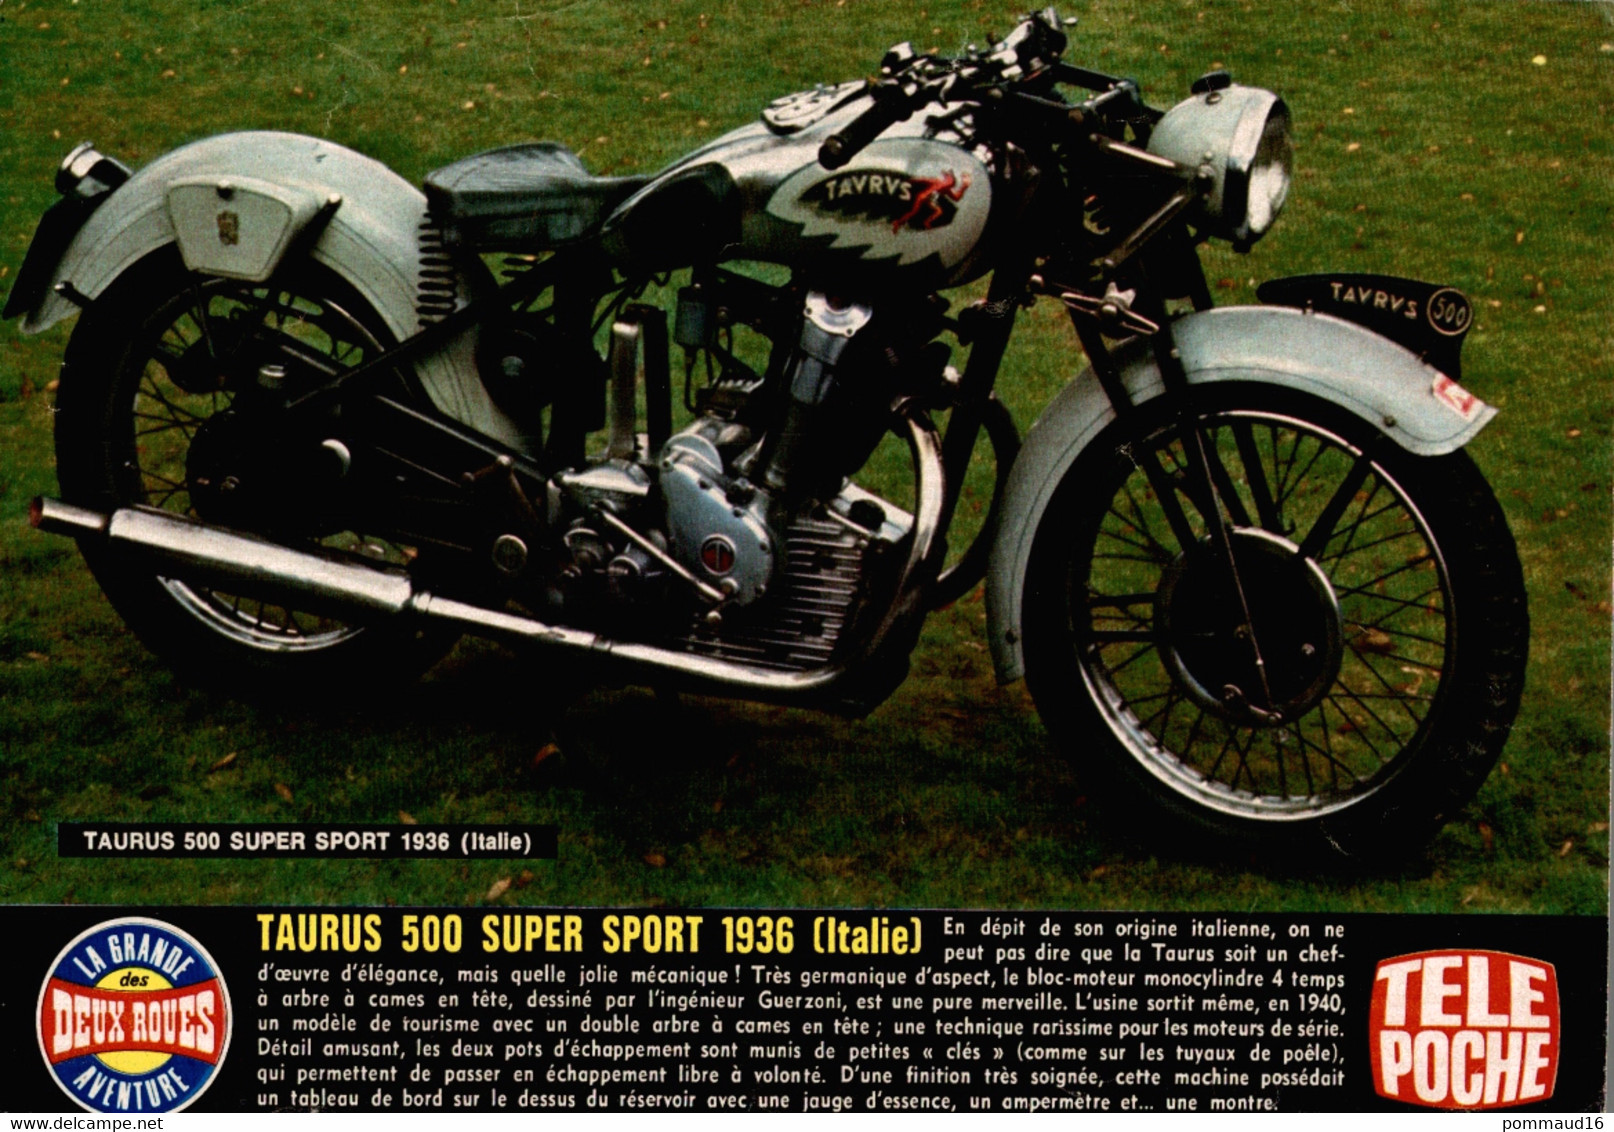 Fiche Technique D'une Taurus 500 Super Sport 1936 (Italie), Découpée Dans Télé Poche - Moto